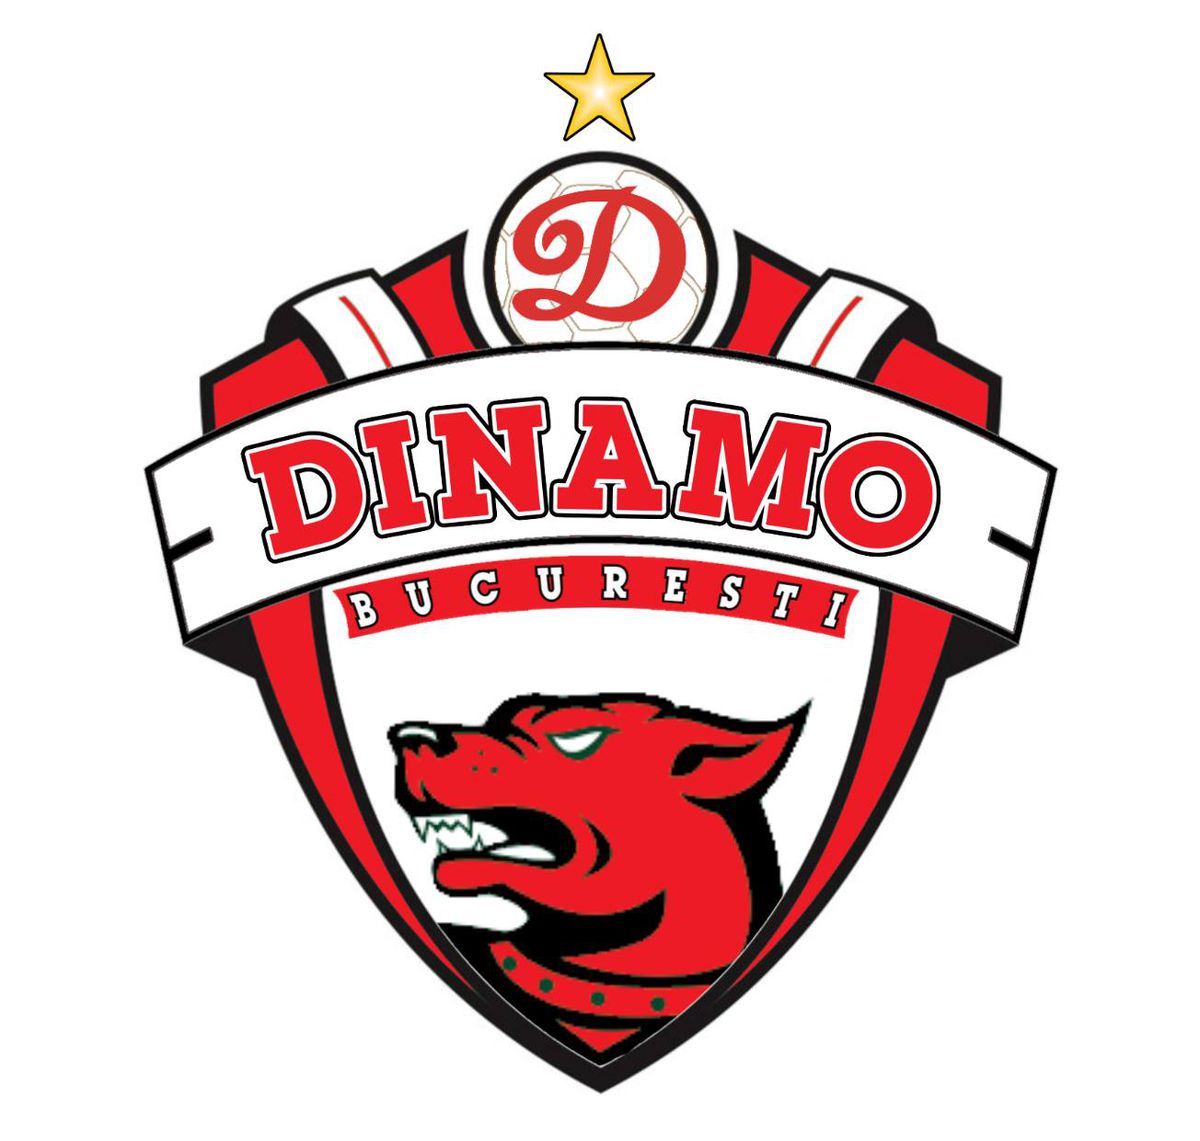 Preferata fanilor lui Dinamo: o siglă dintre cele 5 s-a detașat clar, după prima zi de votare + Reacția lui Cornel Dinu: „Nu îmi place!”